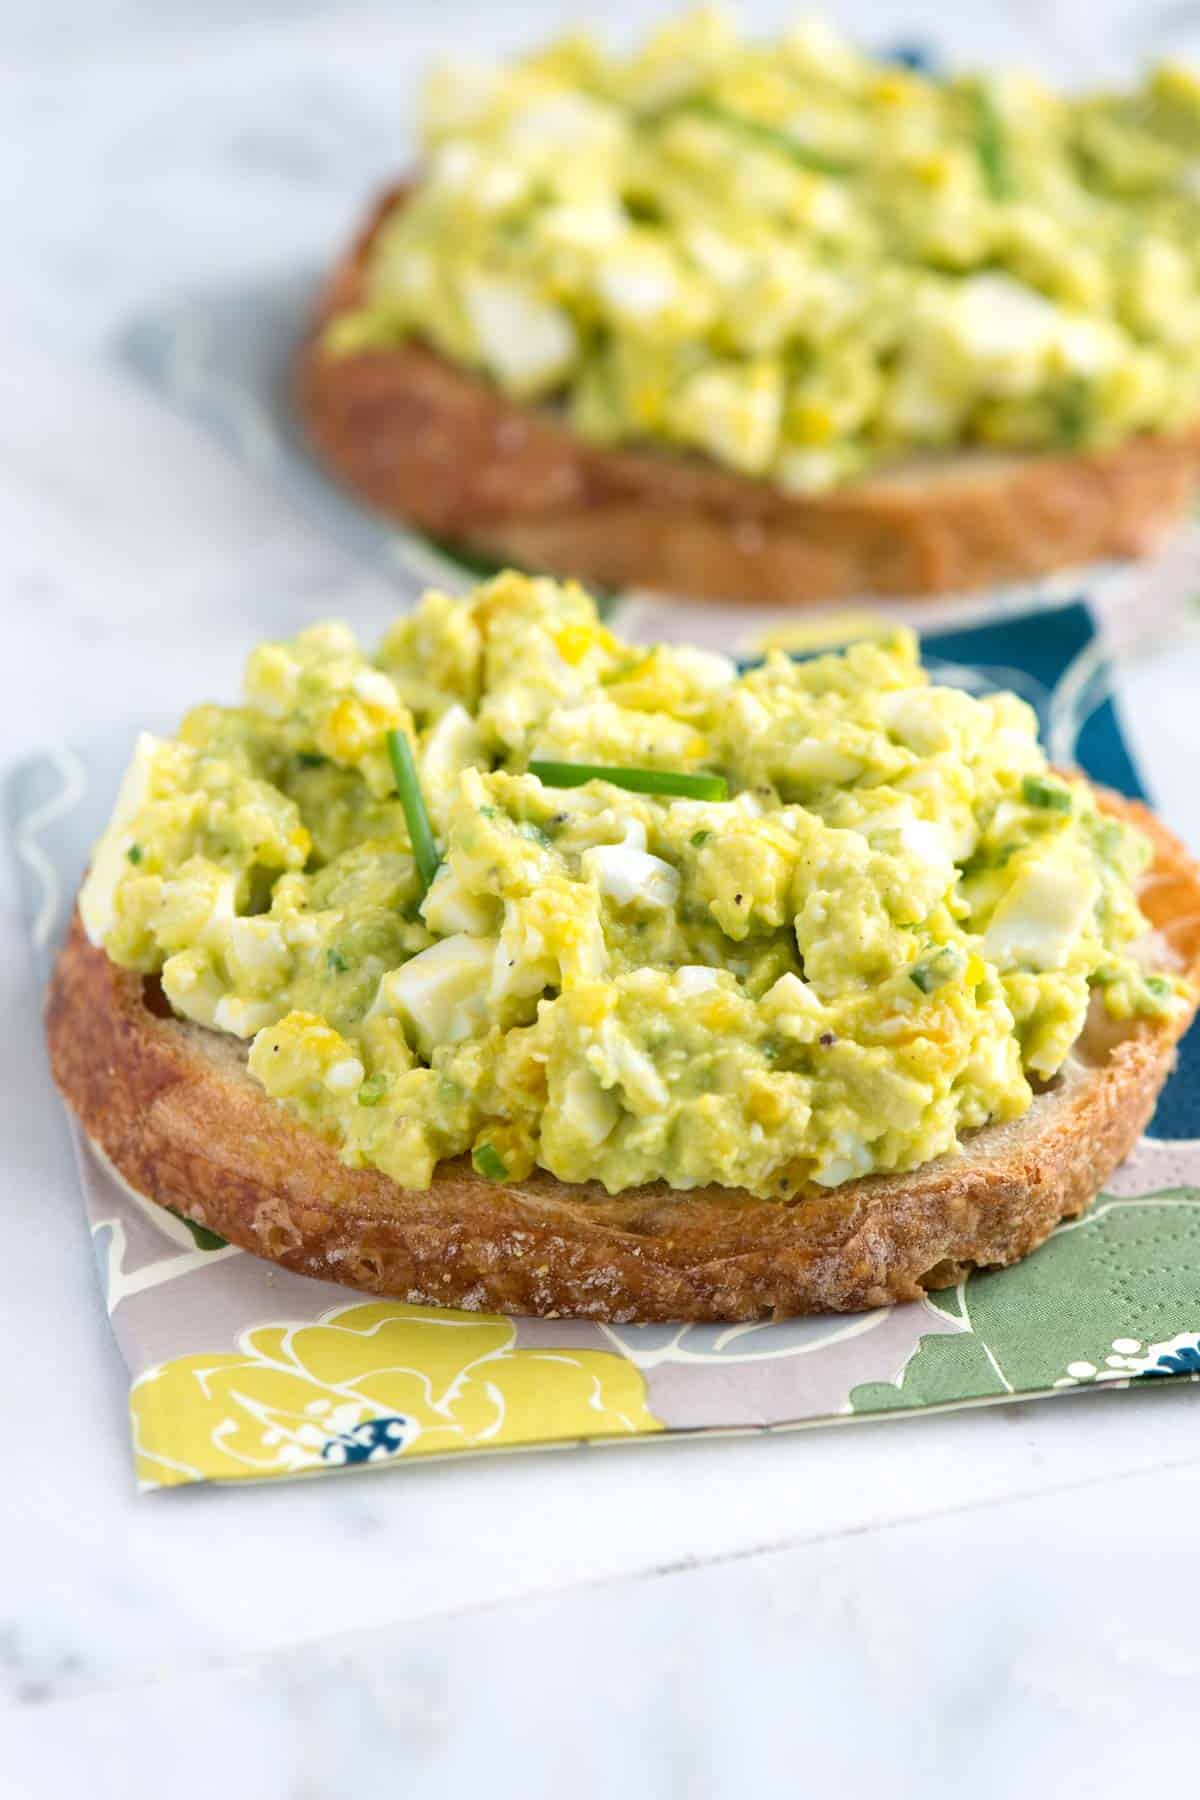 https://www.inspiredtaste.net/wp-content/uploads/2016/06/Avocado-Egg-Salad-Recipe-1-1200.jpg